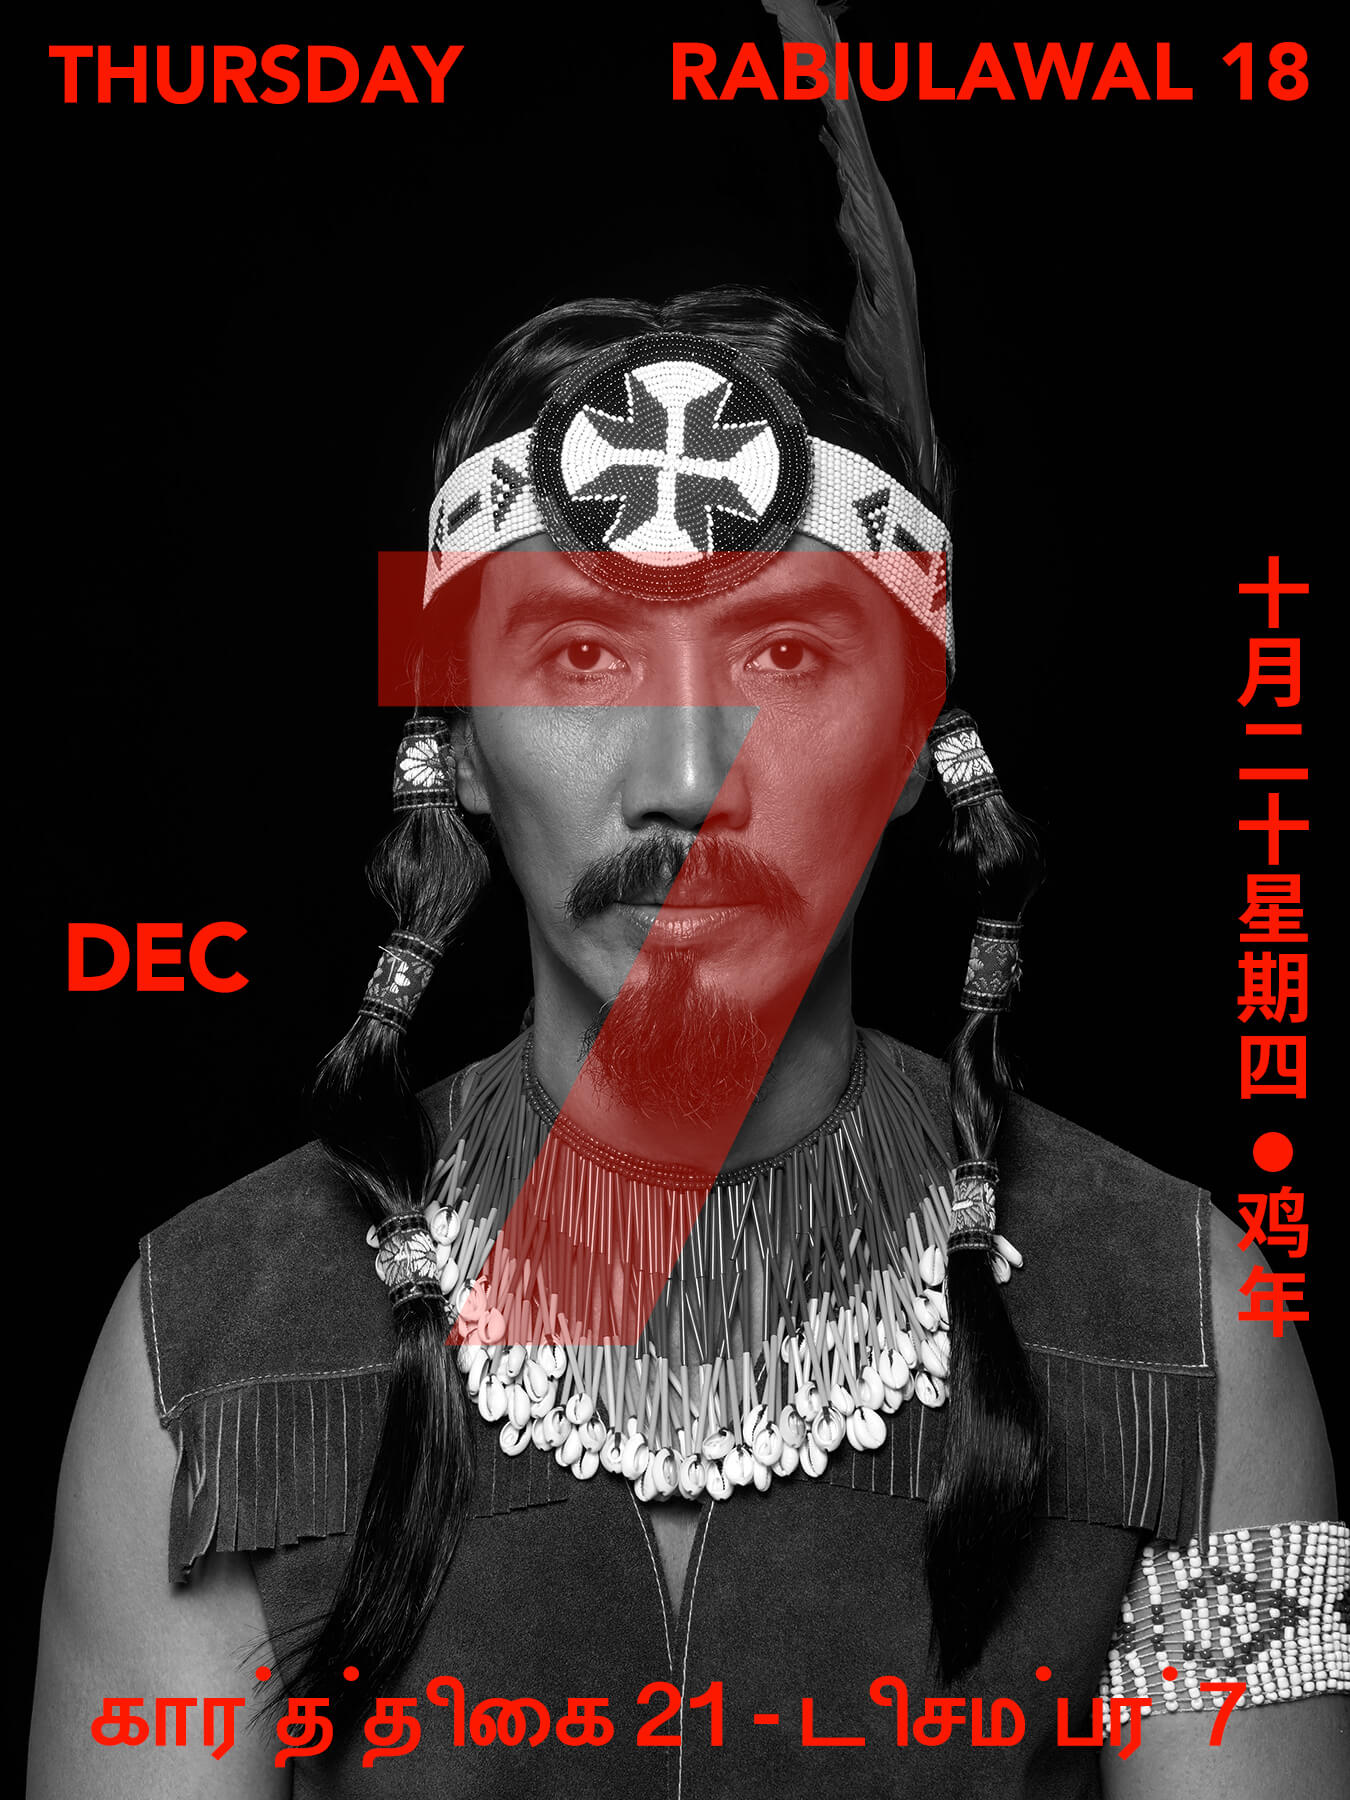 7 Dec 2017 Derong is dressed as POCAHONTAS!